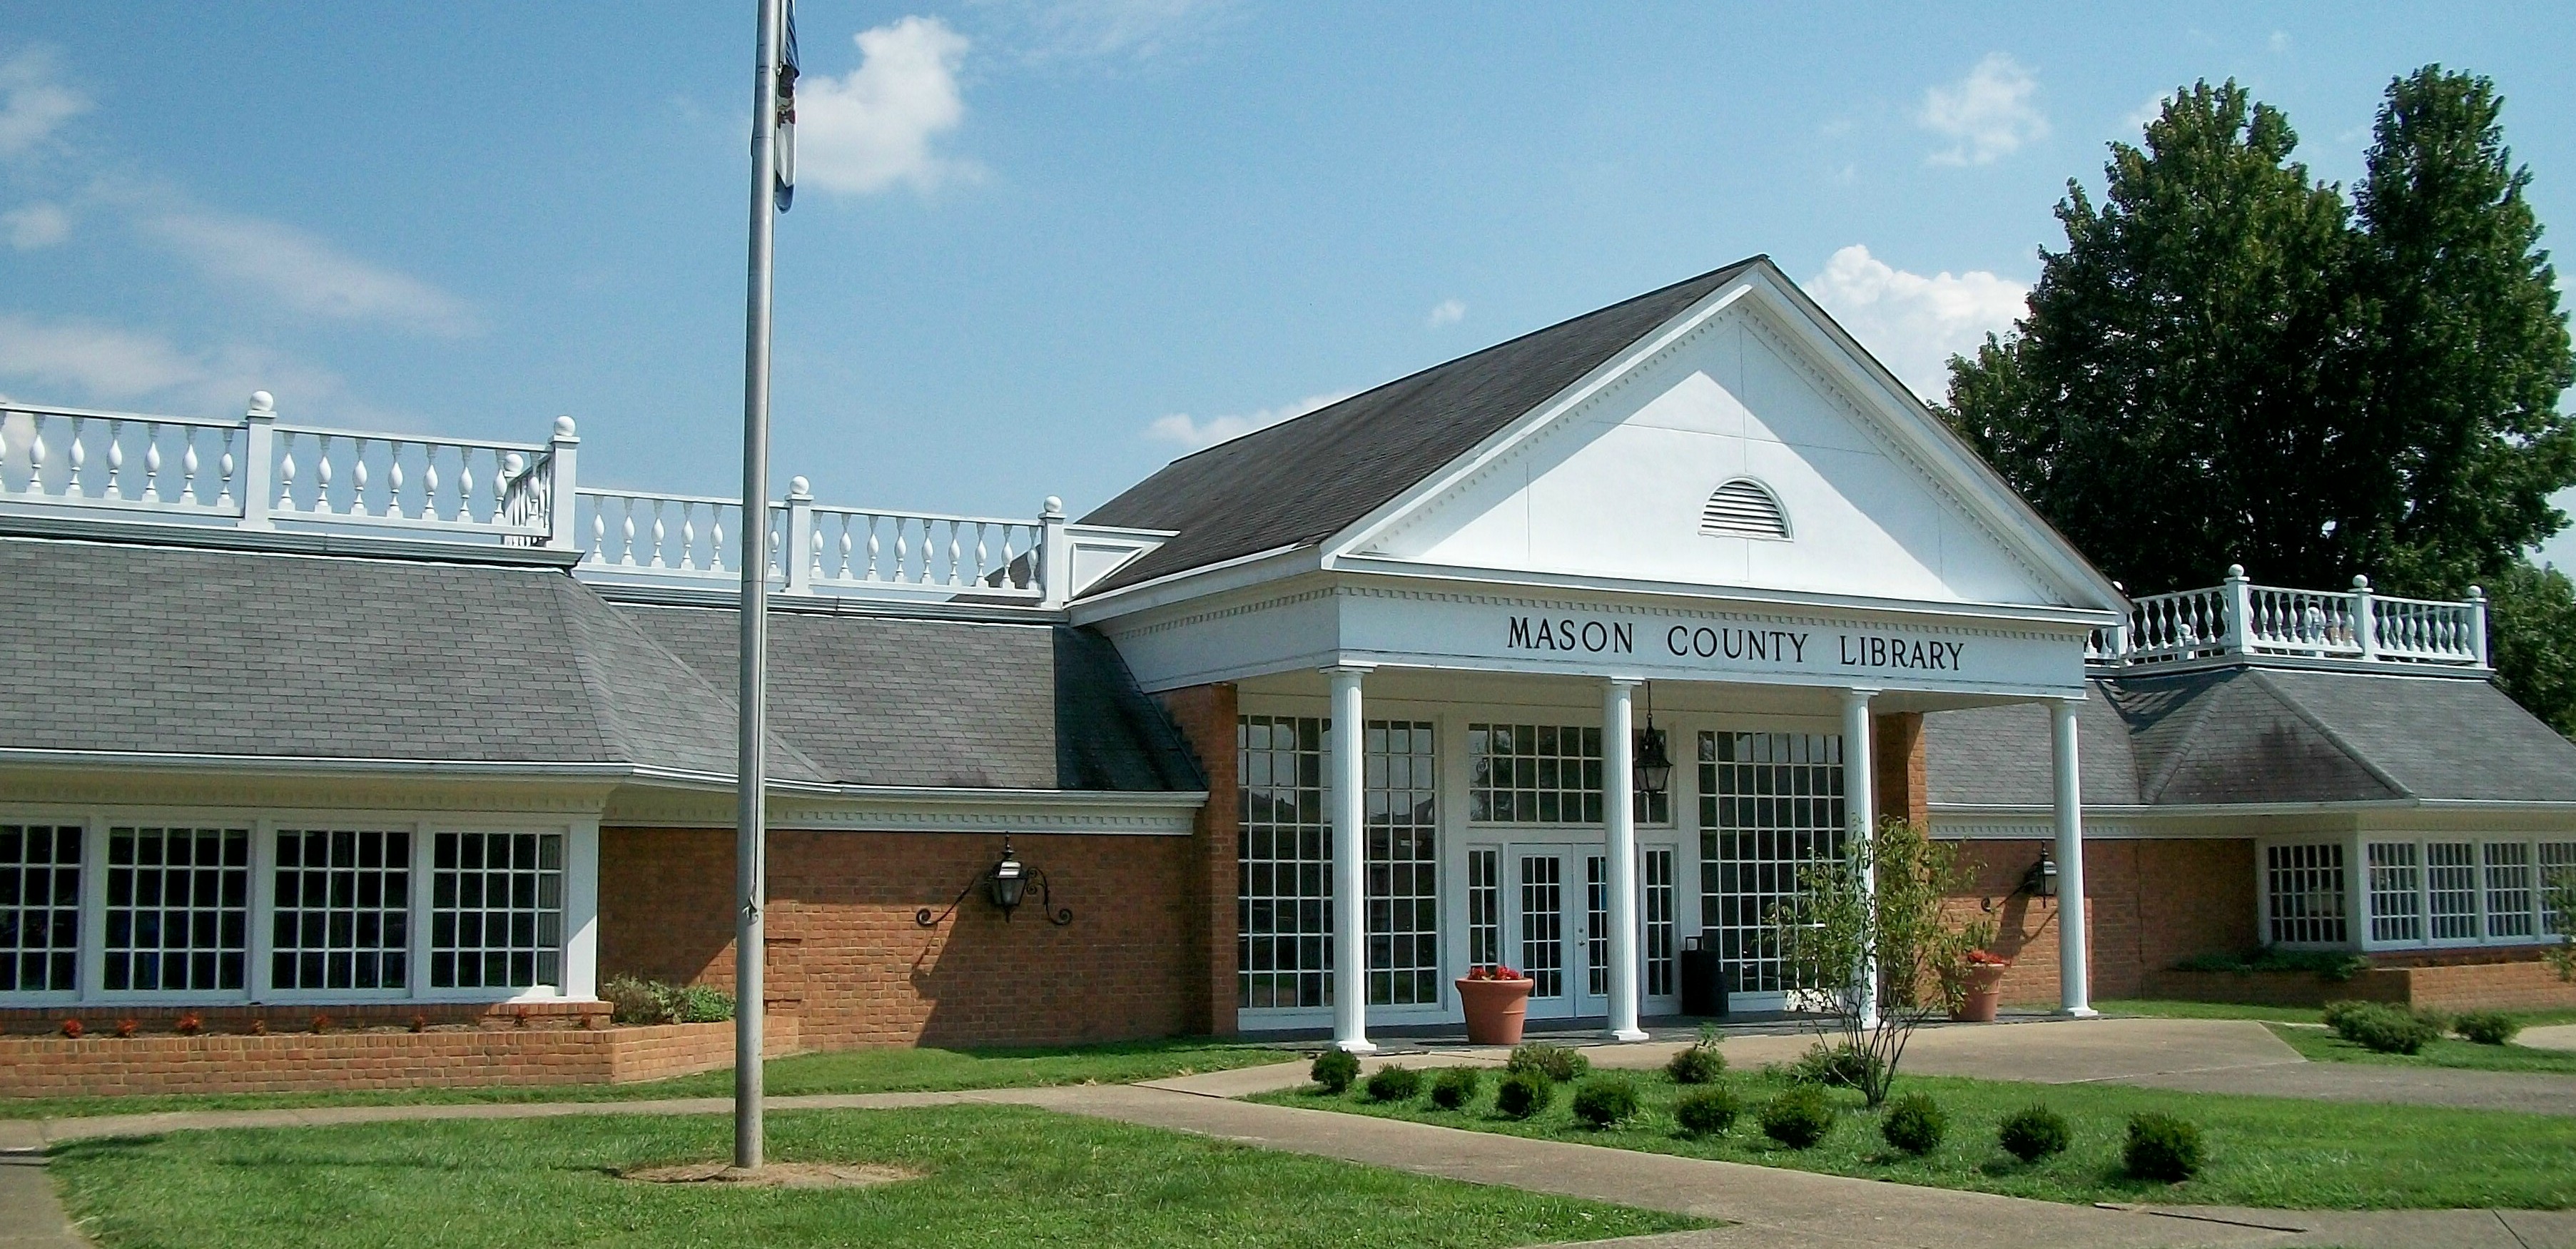 Mason county public library.